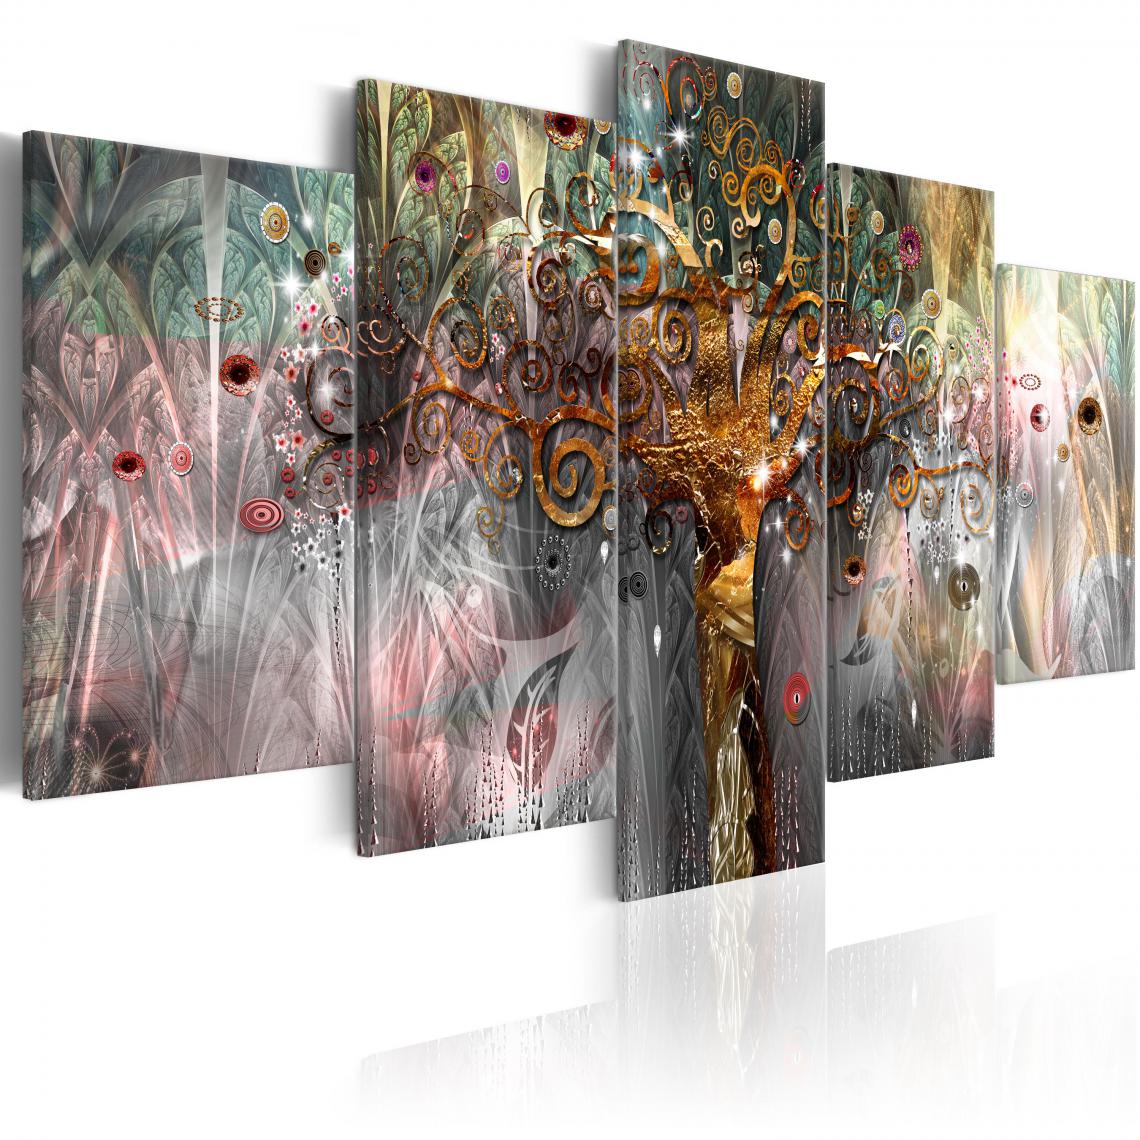 Decoshop26 - Tableau sur toile en 5 panneaux décoration murale image imprimée cadre en bois à suspendre Arbre d'or II 200x100 cm 11_0001346 - Tableaux, peintures